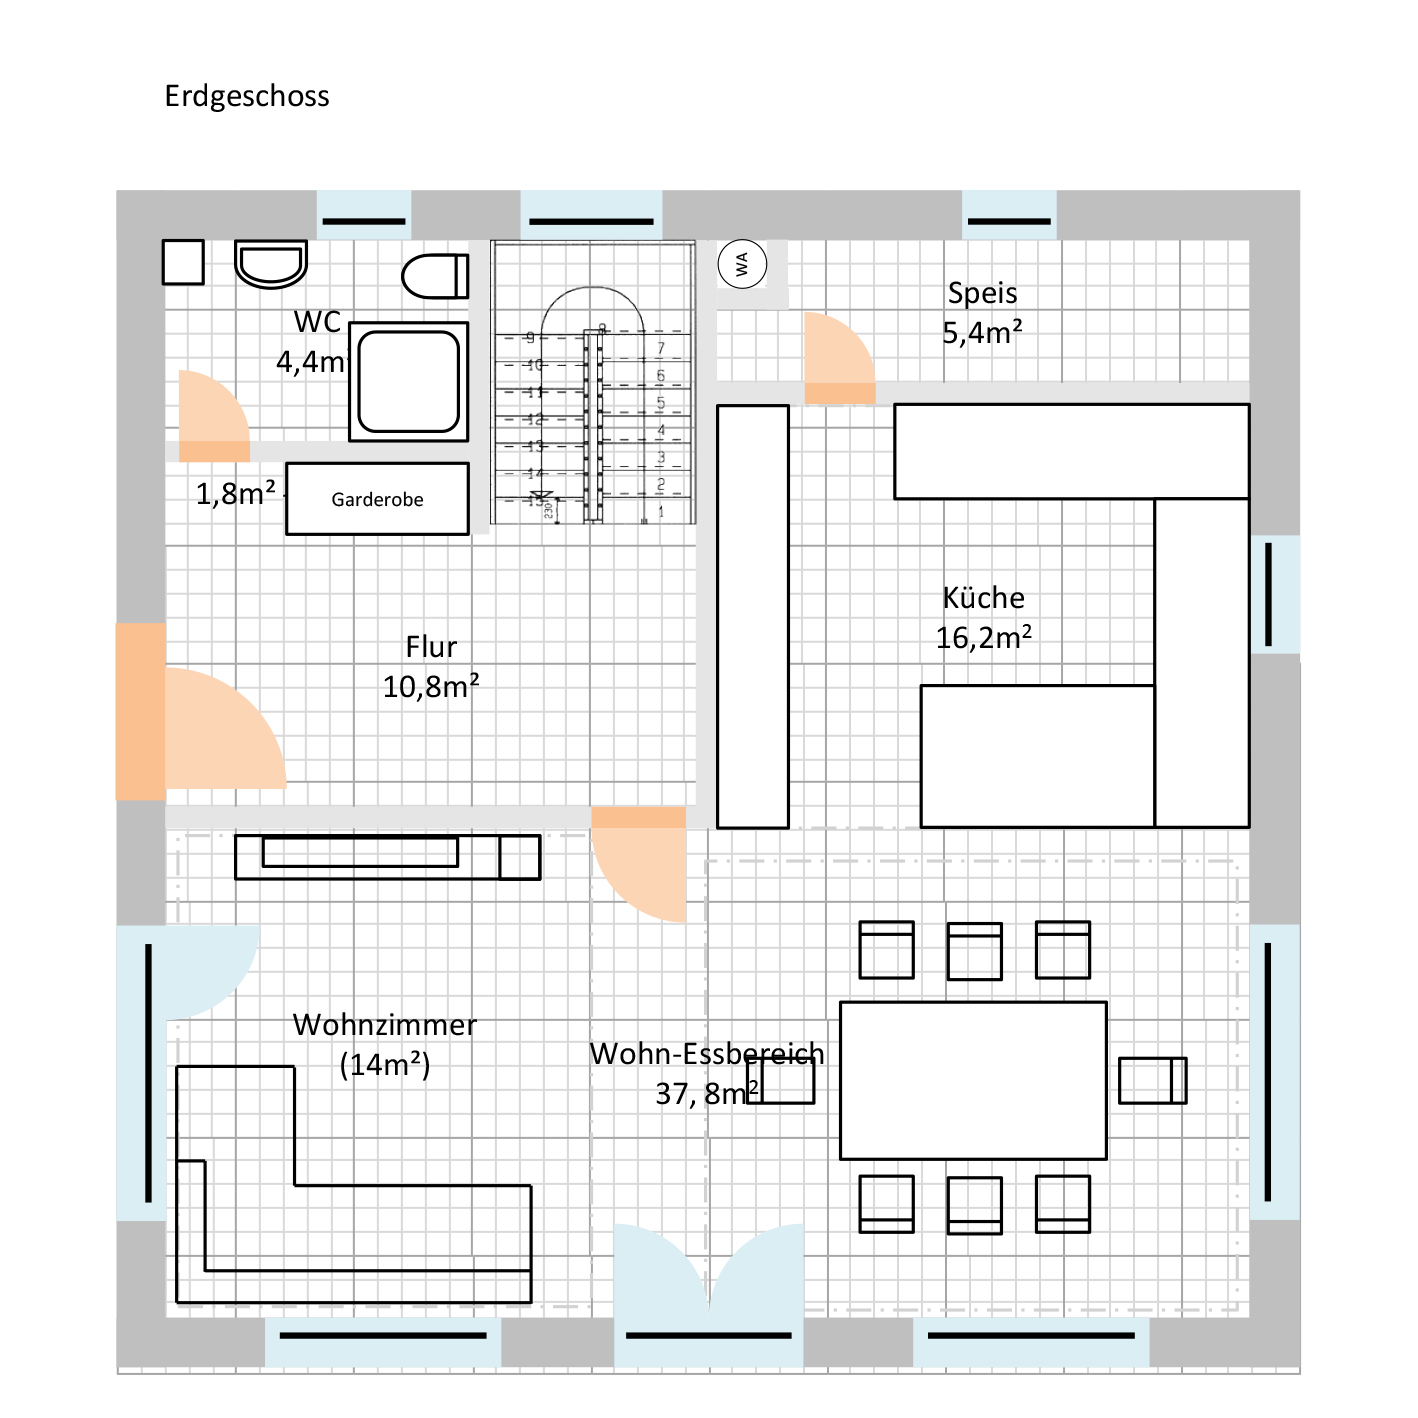 einfaches-einfamilienhaus-hofft-auf-tipps-zur-optimierung-222015-4.jpg